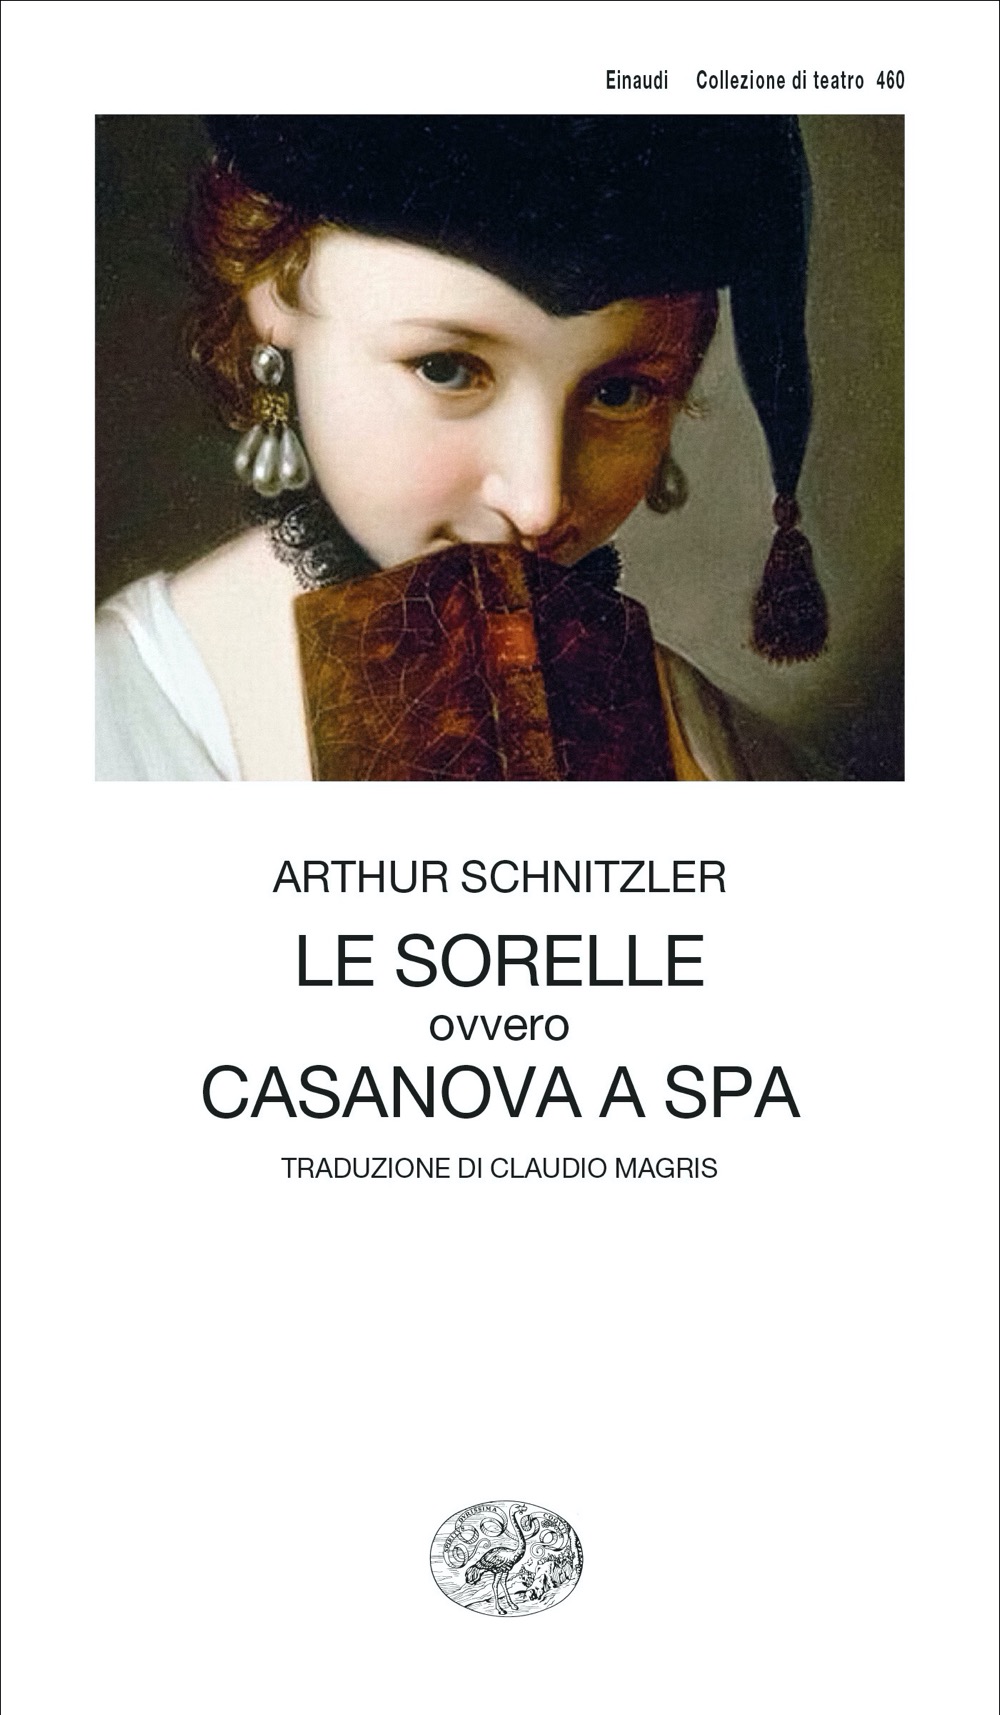 Le sorelle ovvero Casanova a Spa, Arthur Schnitzler. Giulio Einaudi editore  - Collezione di teatro